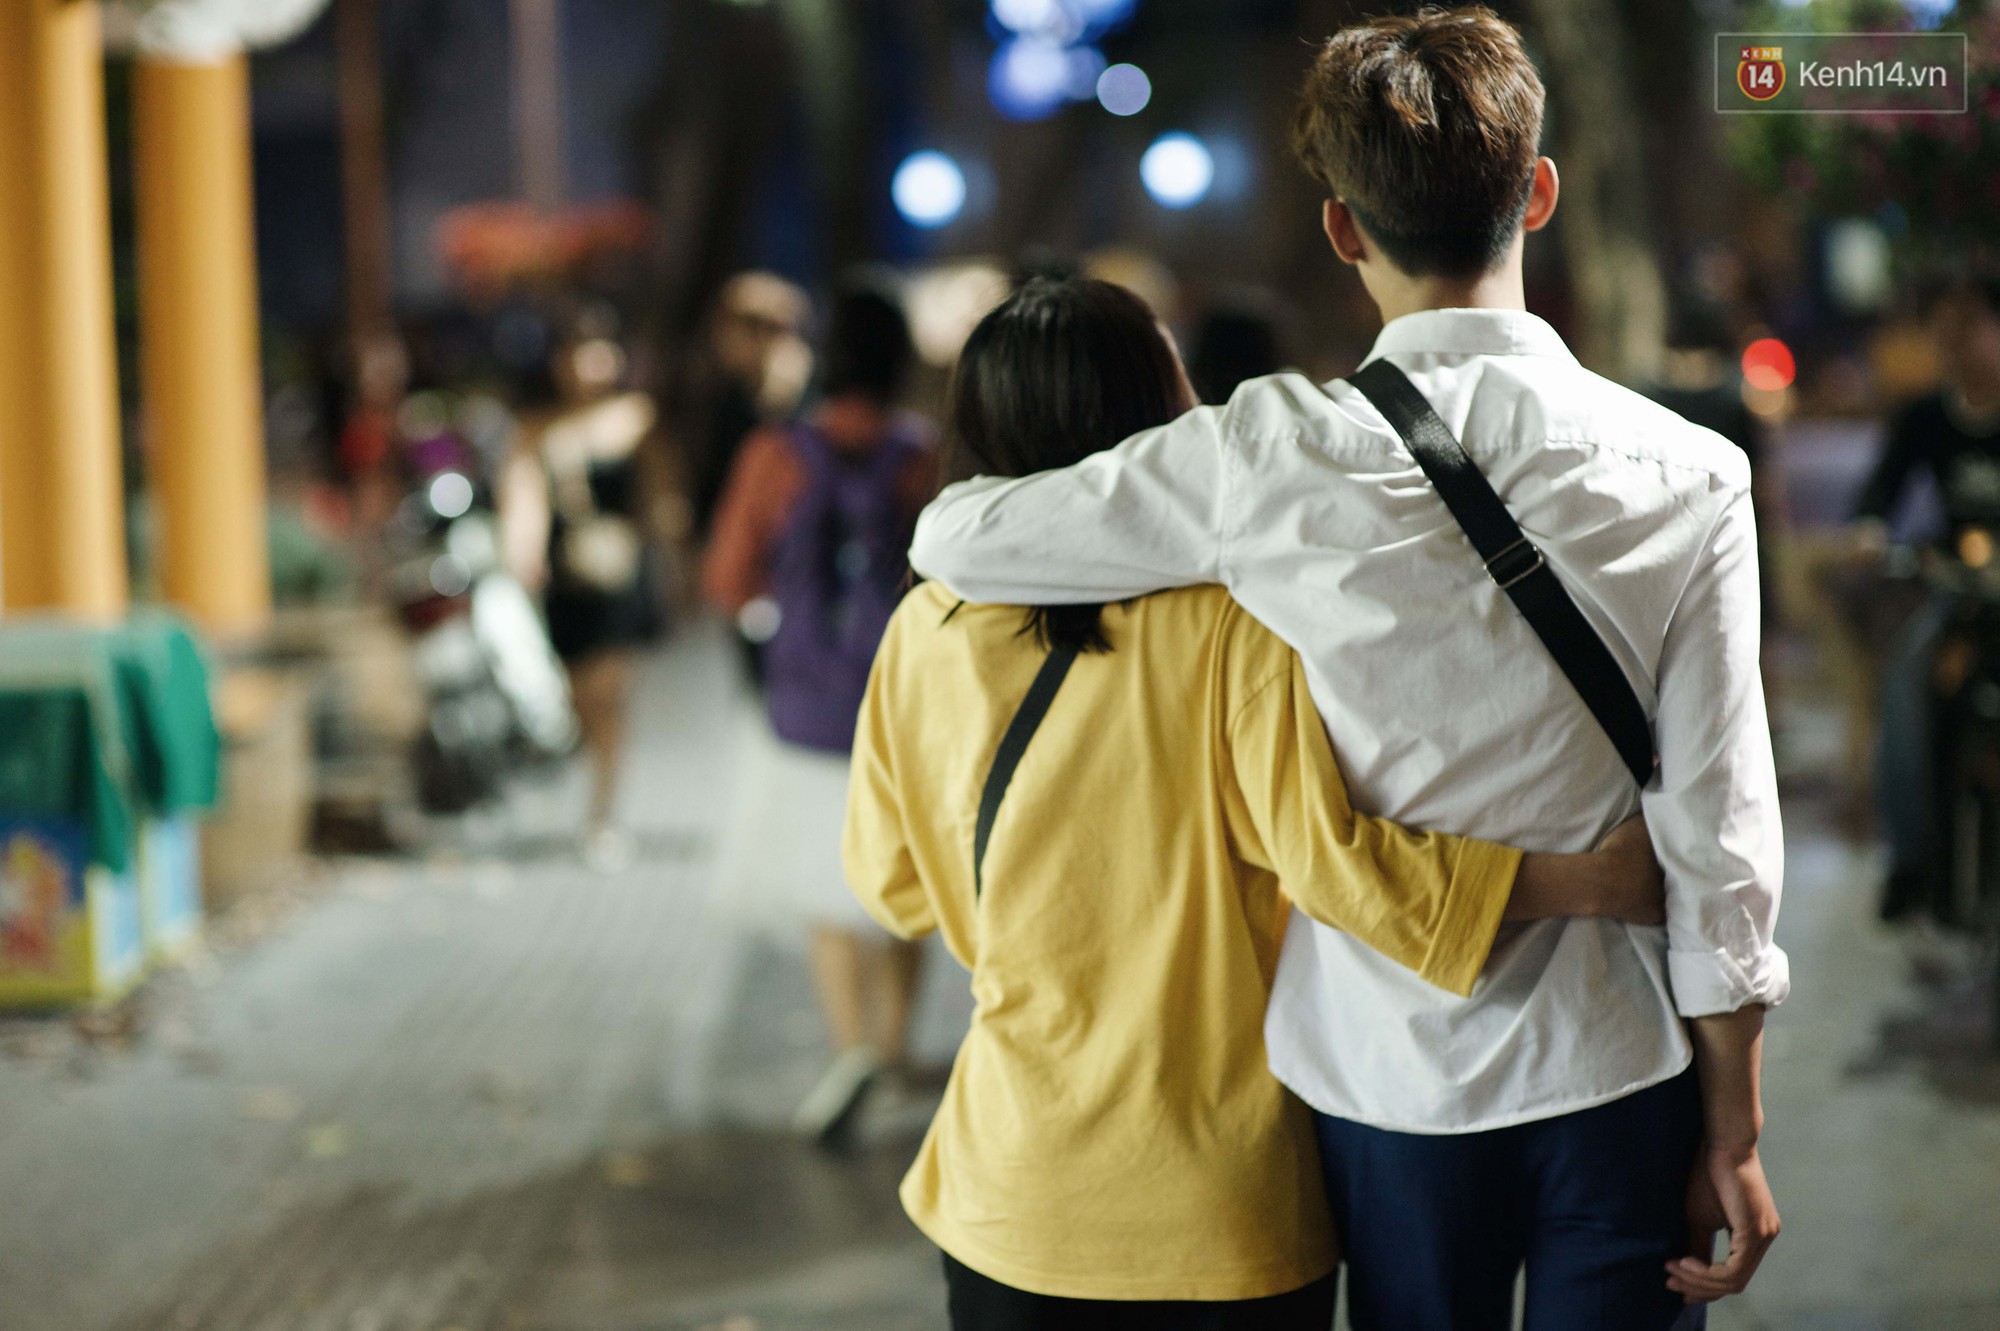 Đêm Valentine tuyệt đẹp với những bức ảnh nắm tay nhau tối tuyệt vời. Hình ảnh của những người yêu đang bước đi trên đường phố trong giây phút đầy tình cảm tạo ra một cảm giác mãnh liệt tình yêu. Hãy cùng ngắm nhìn và cảm nhận những cảm xúc này.